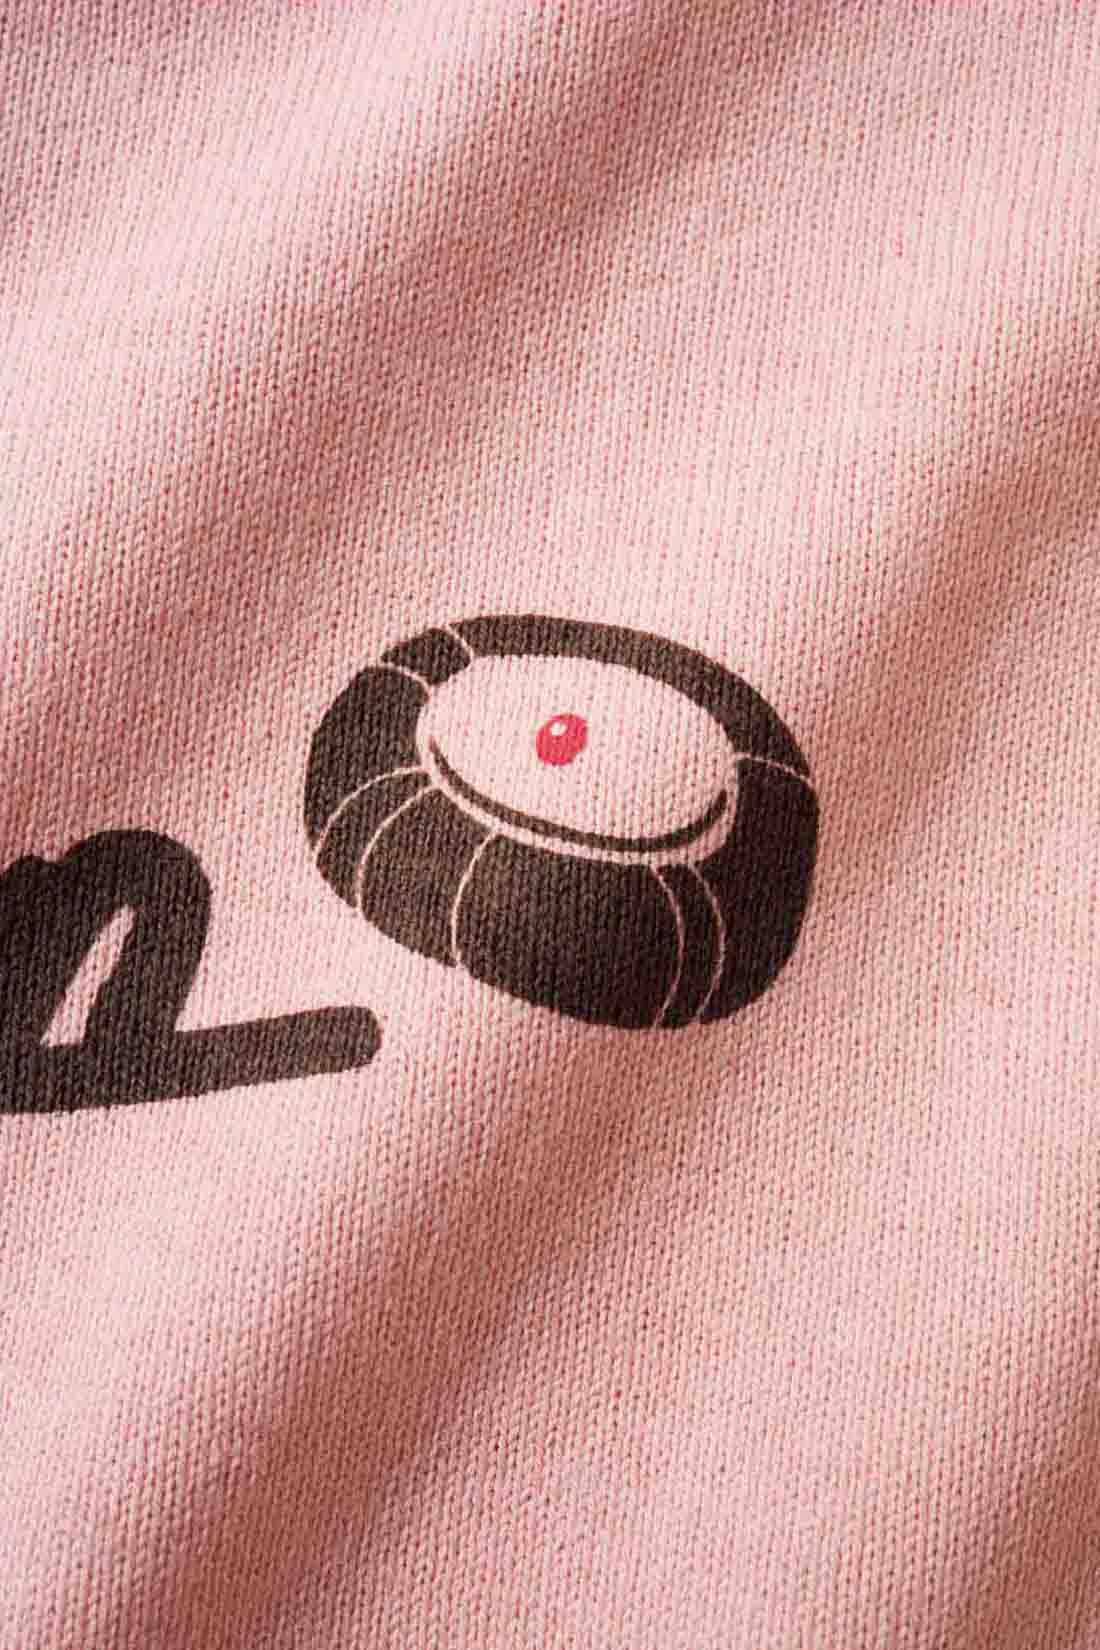 Live in  comfort|Live love cottonプロジェクト リブ イン コンフォート神戸のベーカリーハラダのパンさんとつくったオーガニックコットンのレトロかわいいTシャツ〈ベビーピンク〉|バックプリントには定番商品 「シャーベットクリーム」 のイラストも。